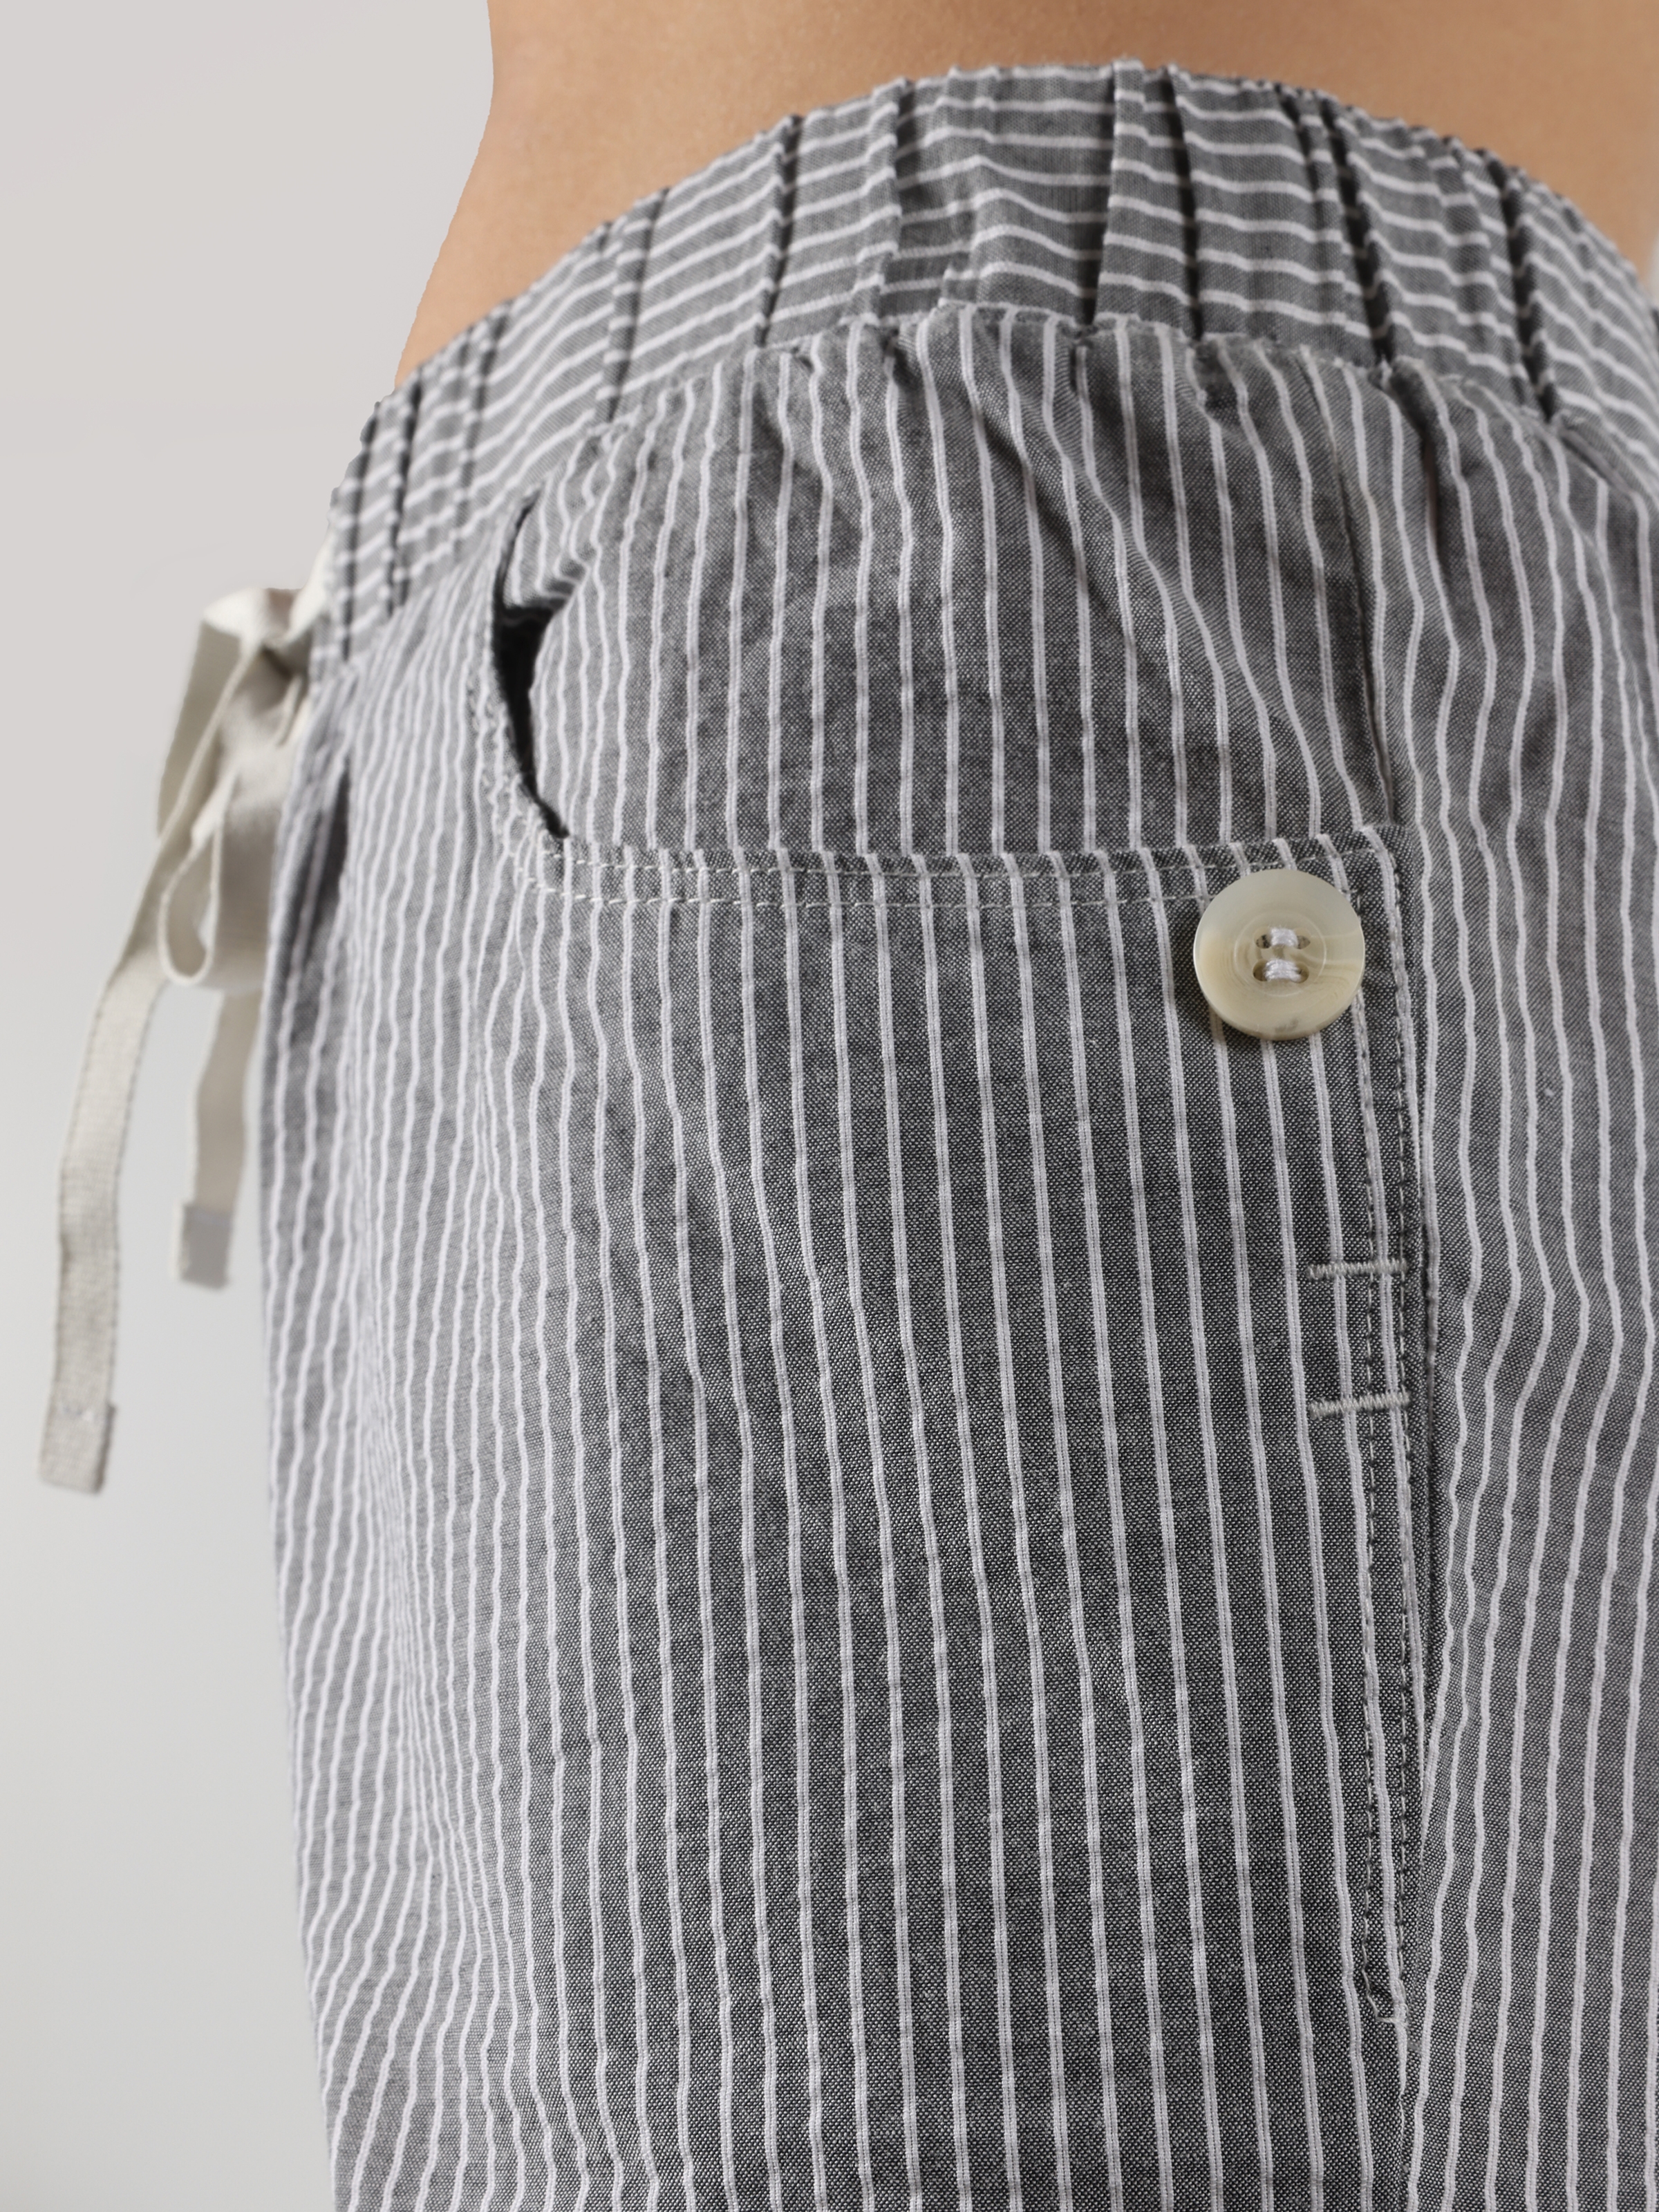 Afficher les détails de Pantalon Femme Coupe Normale Taille Basse Jambe Droite Anthracite